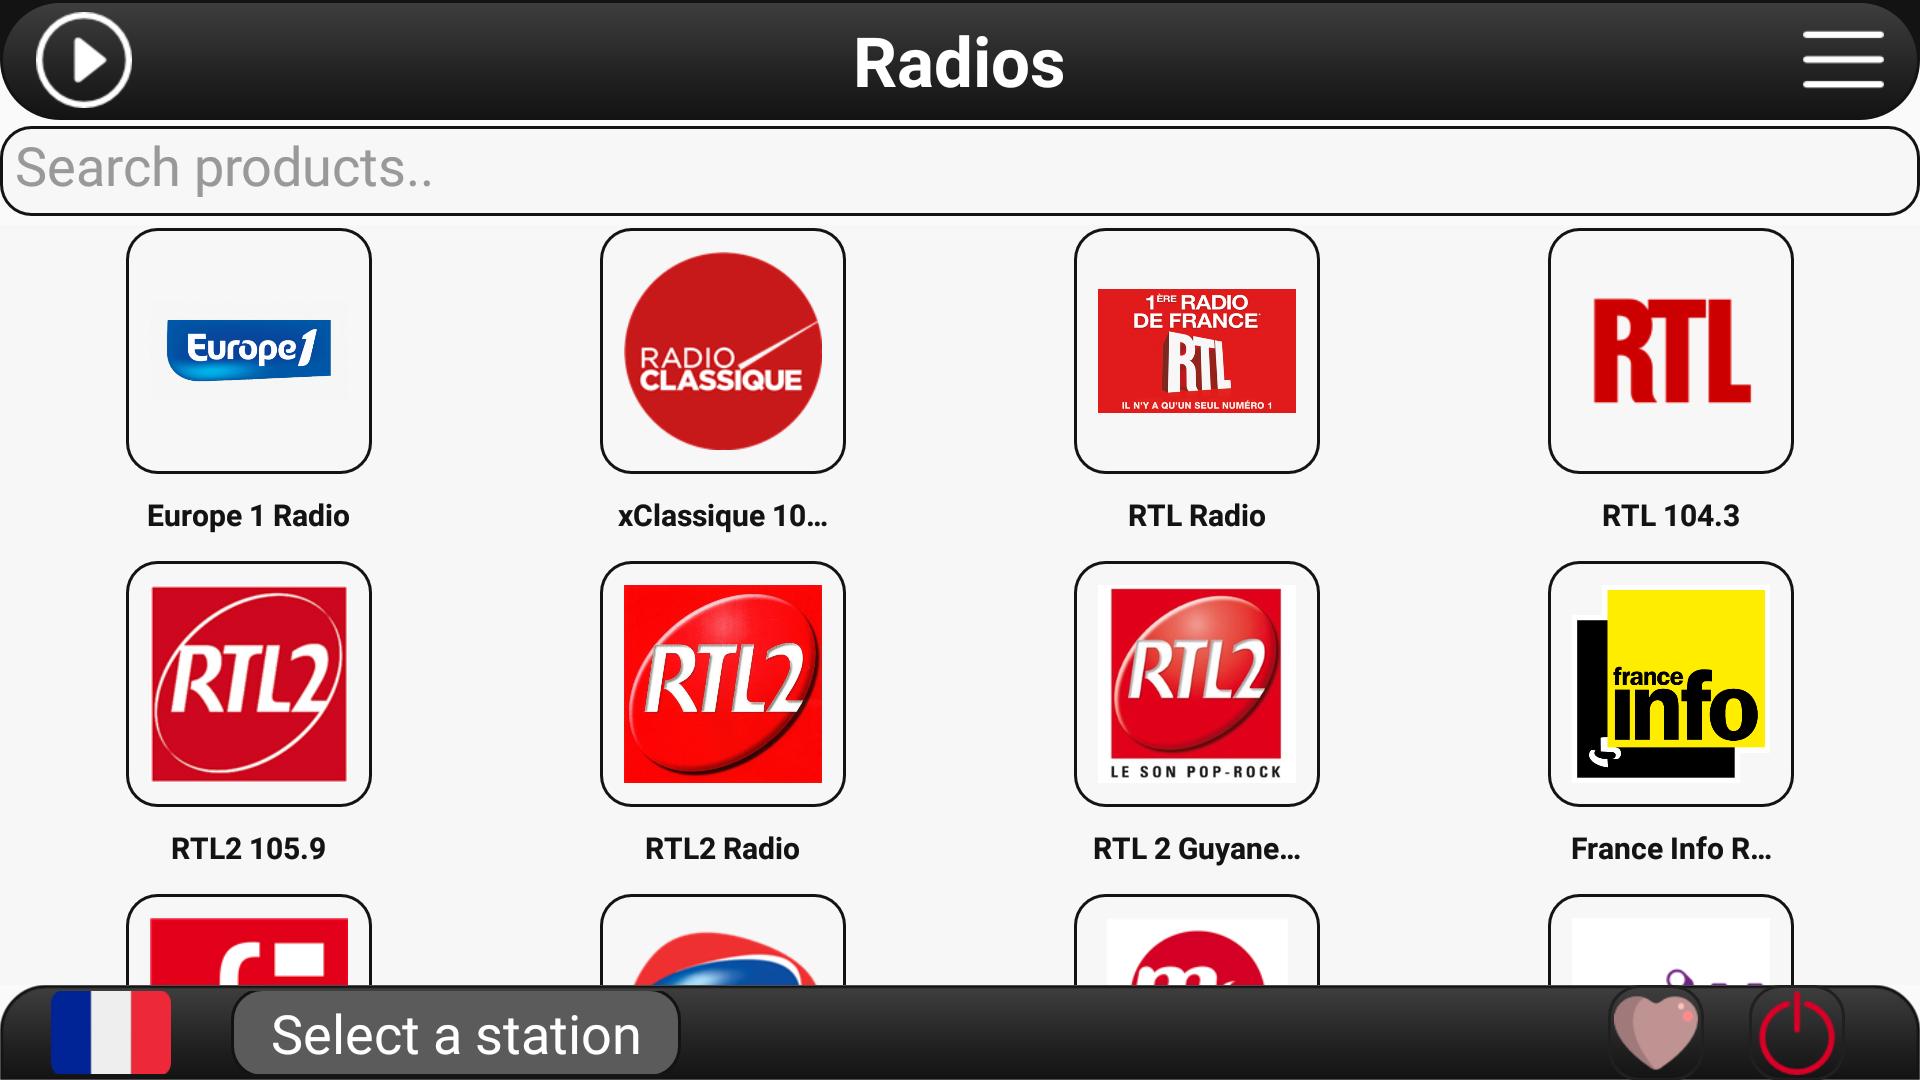 RTL радио. Радио богатырь ФМ. Radio Europe 1. Хф радио ФМ. Прием фм радио